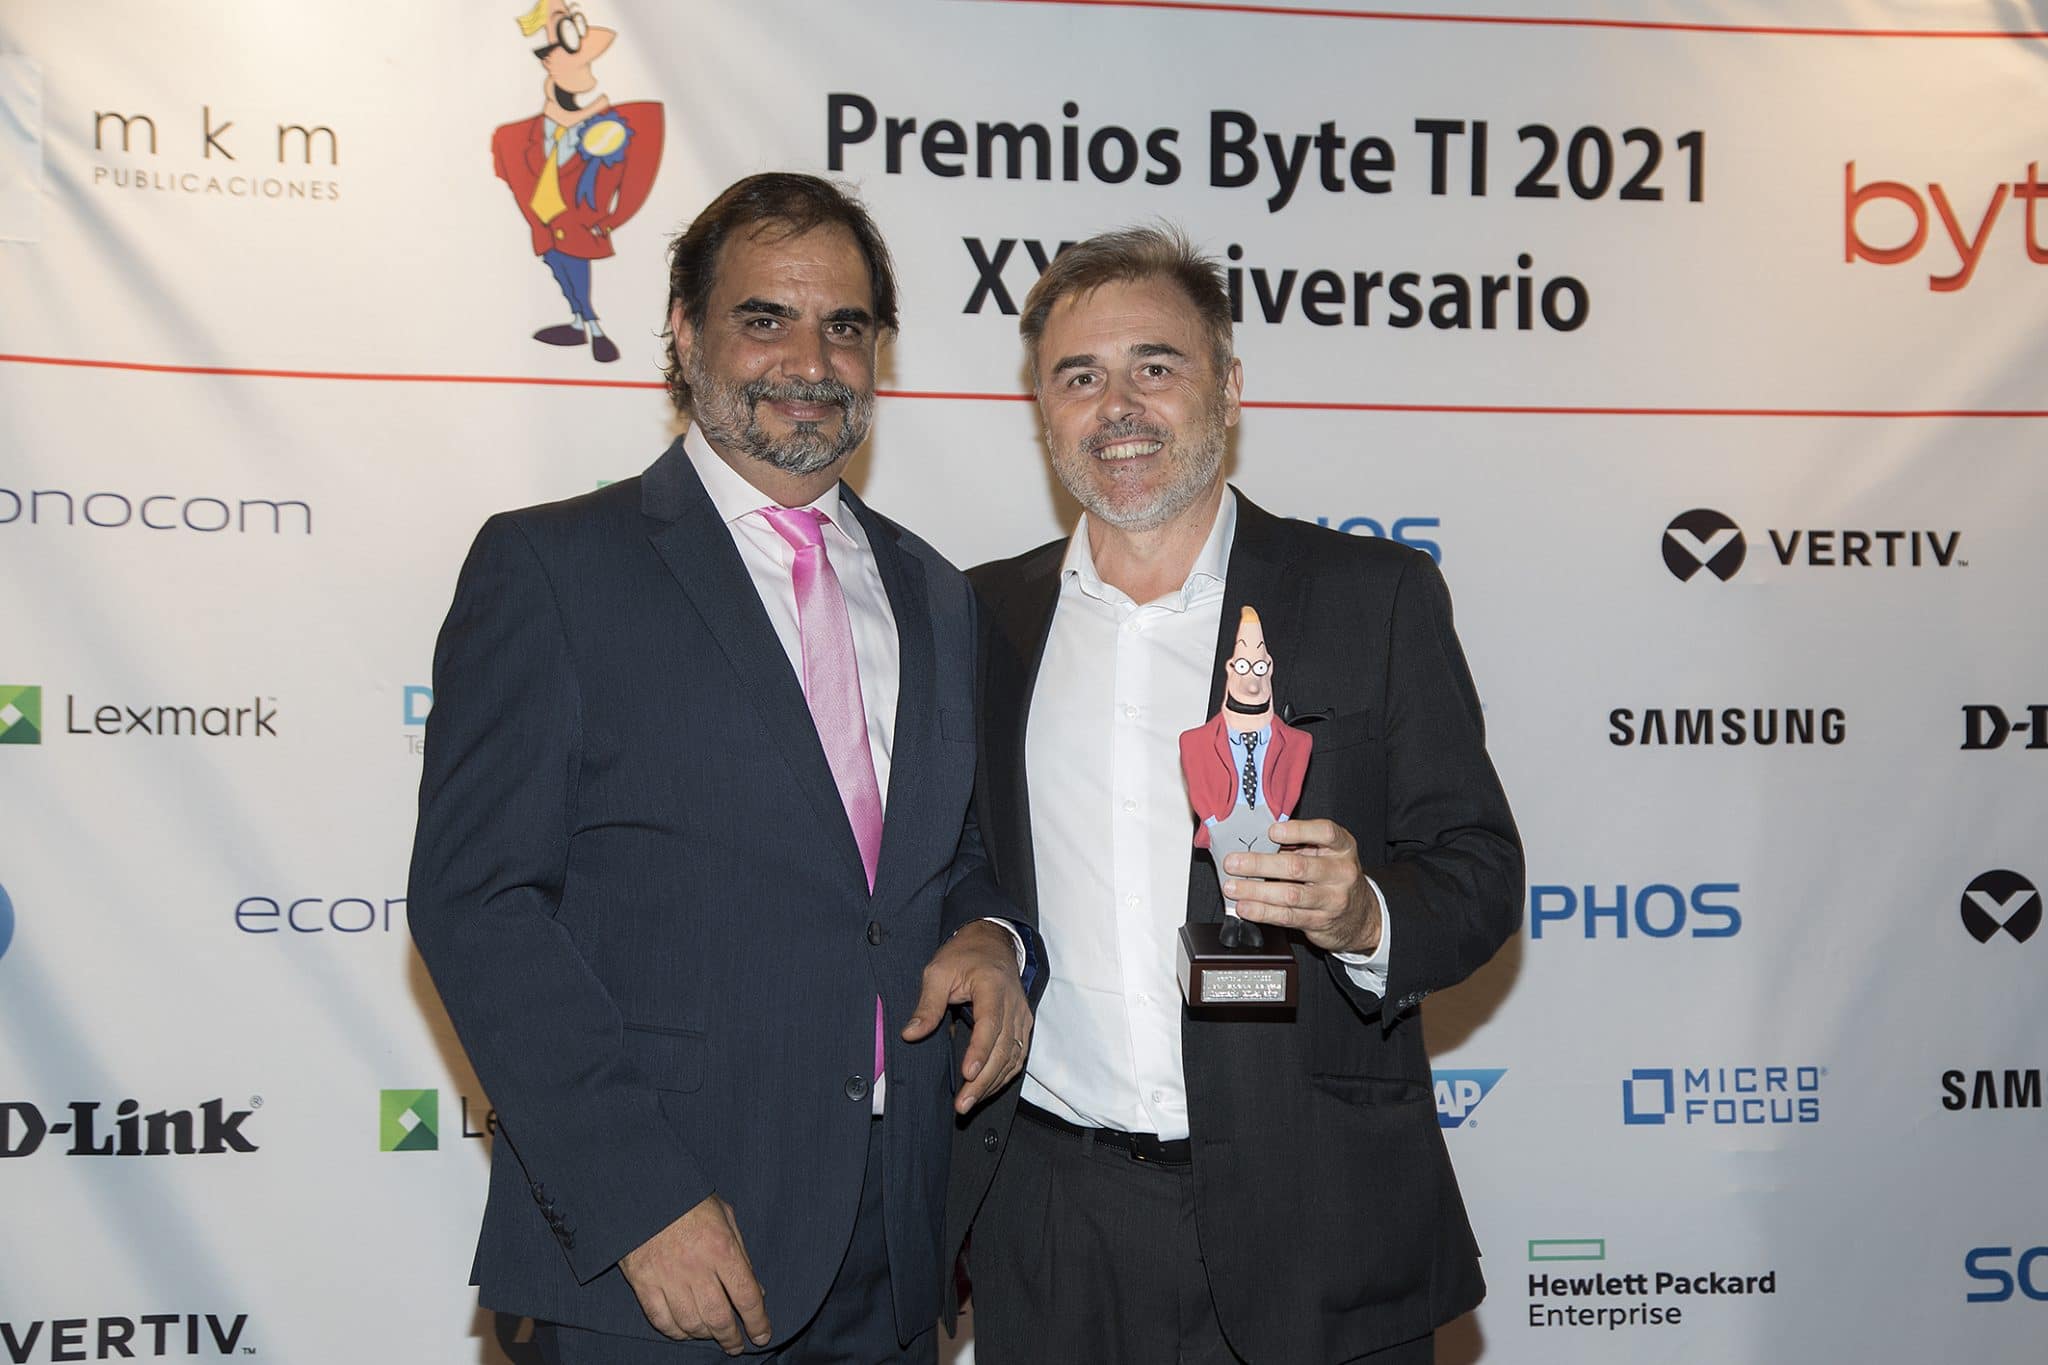 Juan Leal, Director General de Lexmark España, recoge el premio a la Mejor Impresora Inteligente